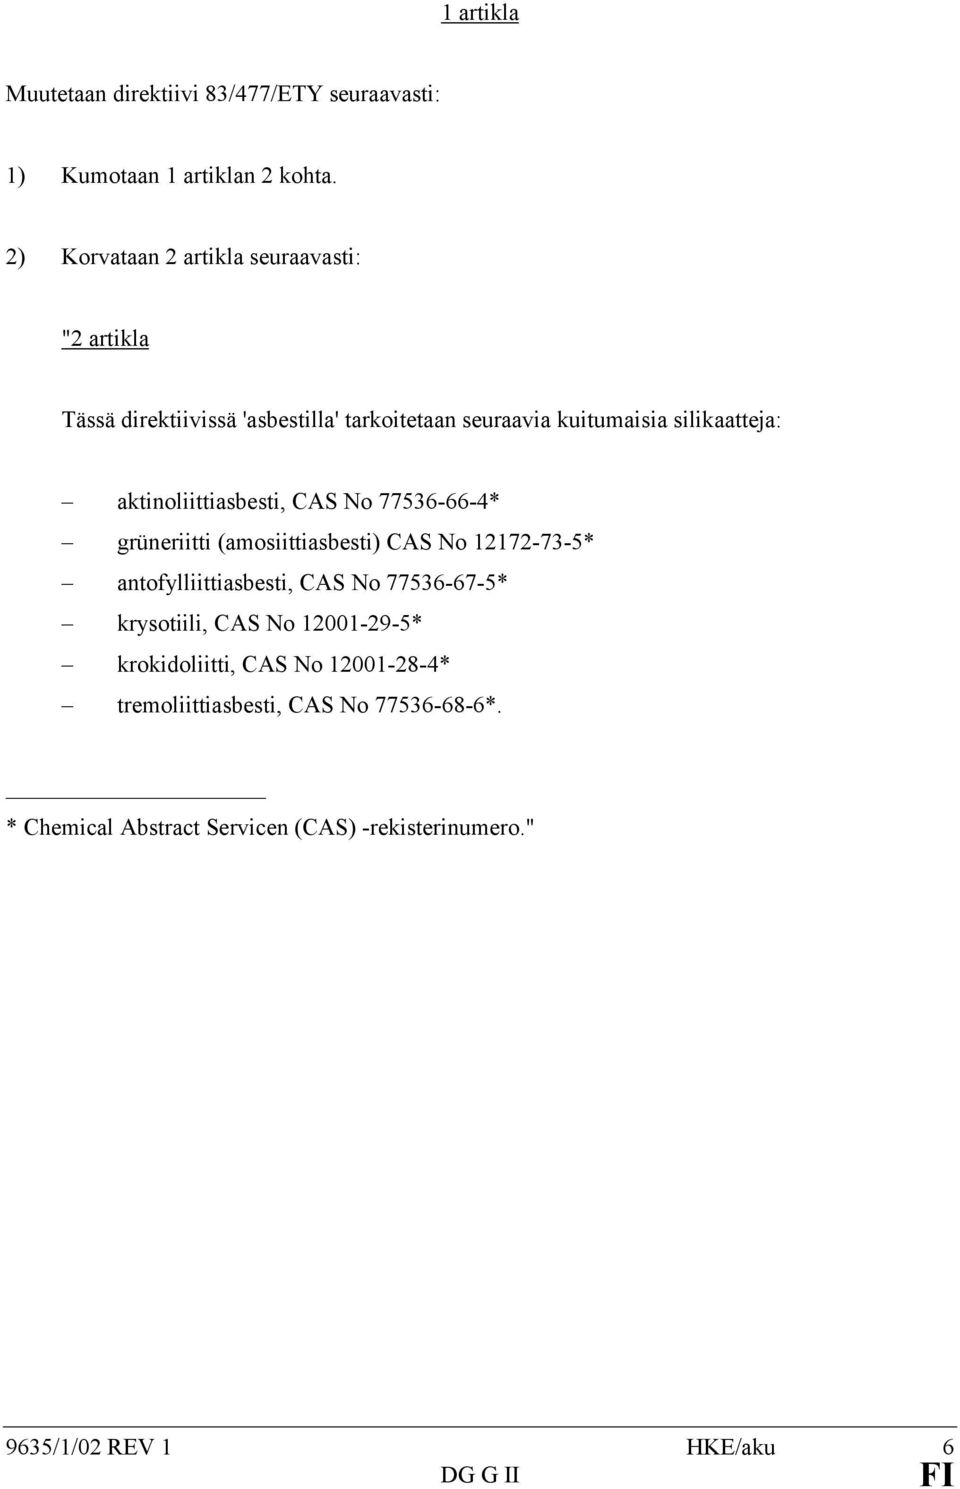 aktinoliittiasbesti, CAS No 77536-66-4* grüneriitti (amosiittiasbesti) CAS No 12172-73-5* antofylliittiasbesti, CAS No 77536-67-5*